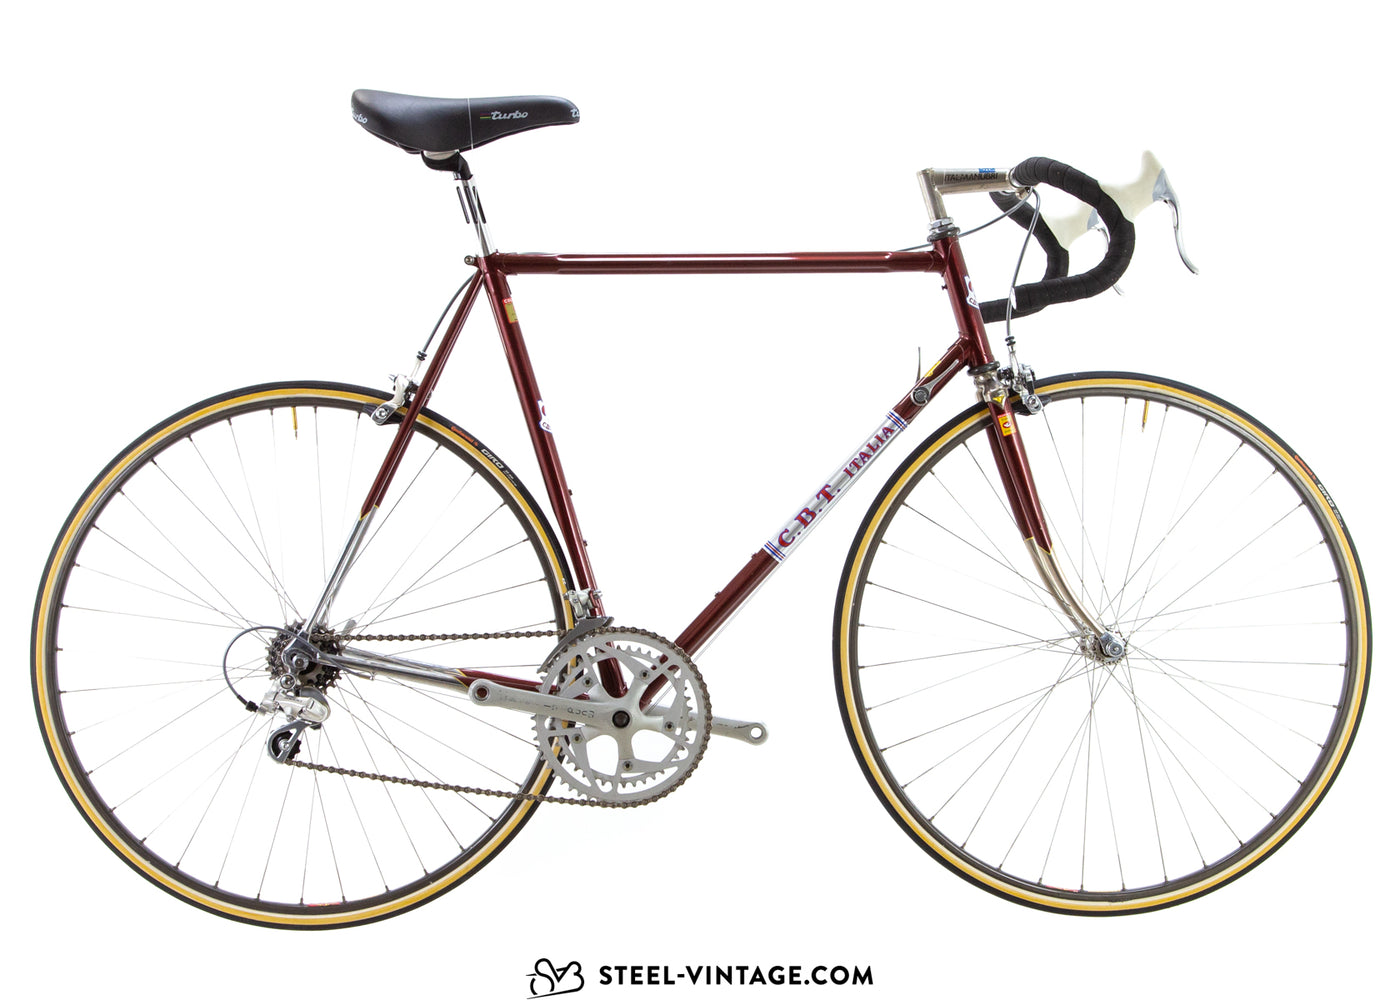 C.B.T. Italia SLX Road Bicycle 1980